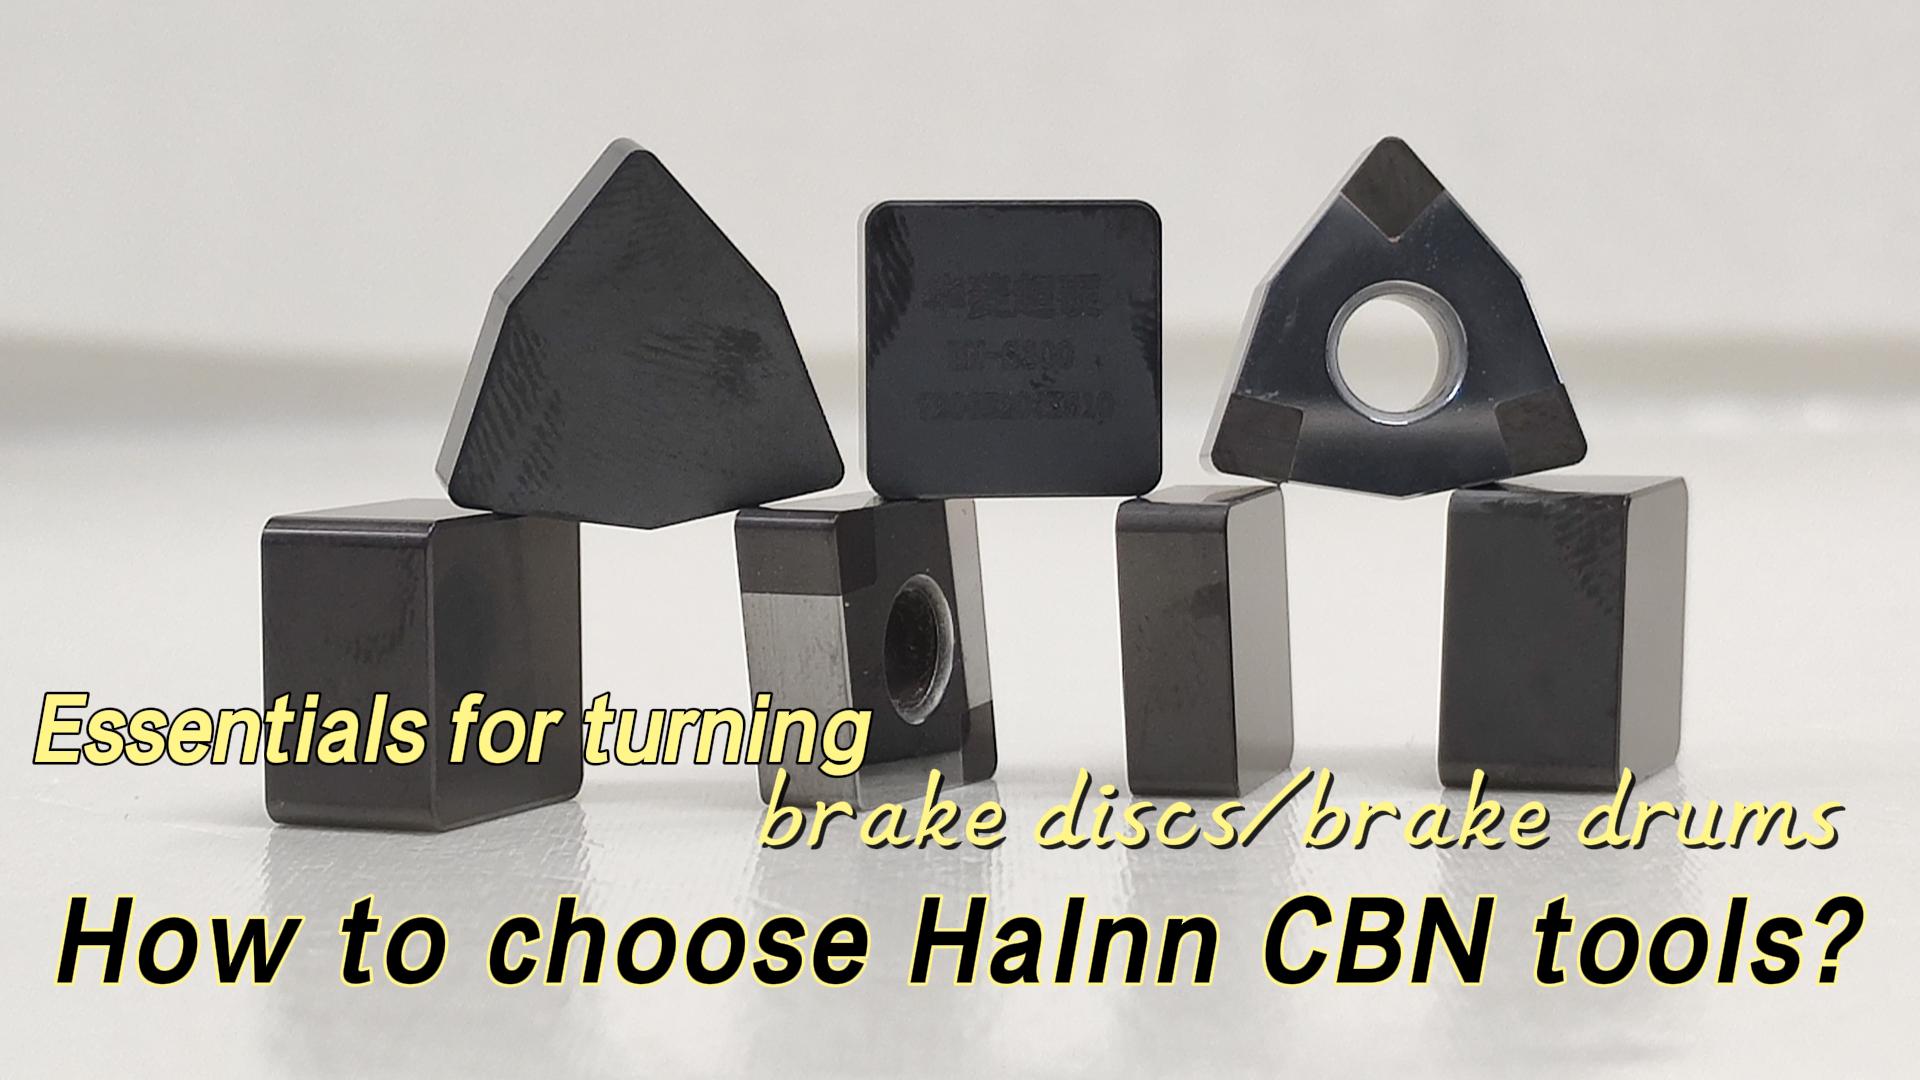 Video zum Drehen von Bremsscheiben mit CBN-Werkzeugen (三) - Halnn CBN-Werkzeugauswahl und Anwendungs